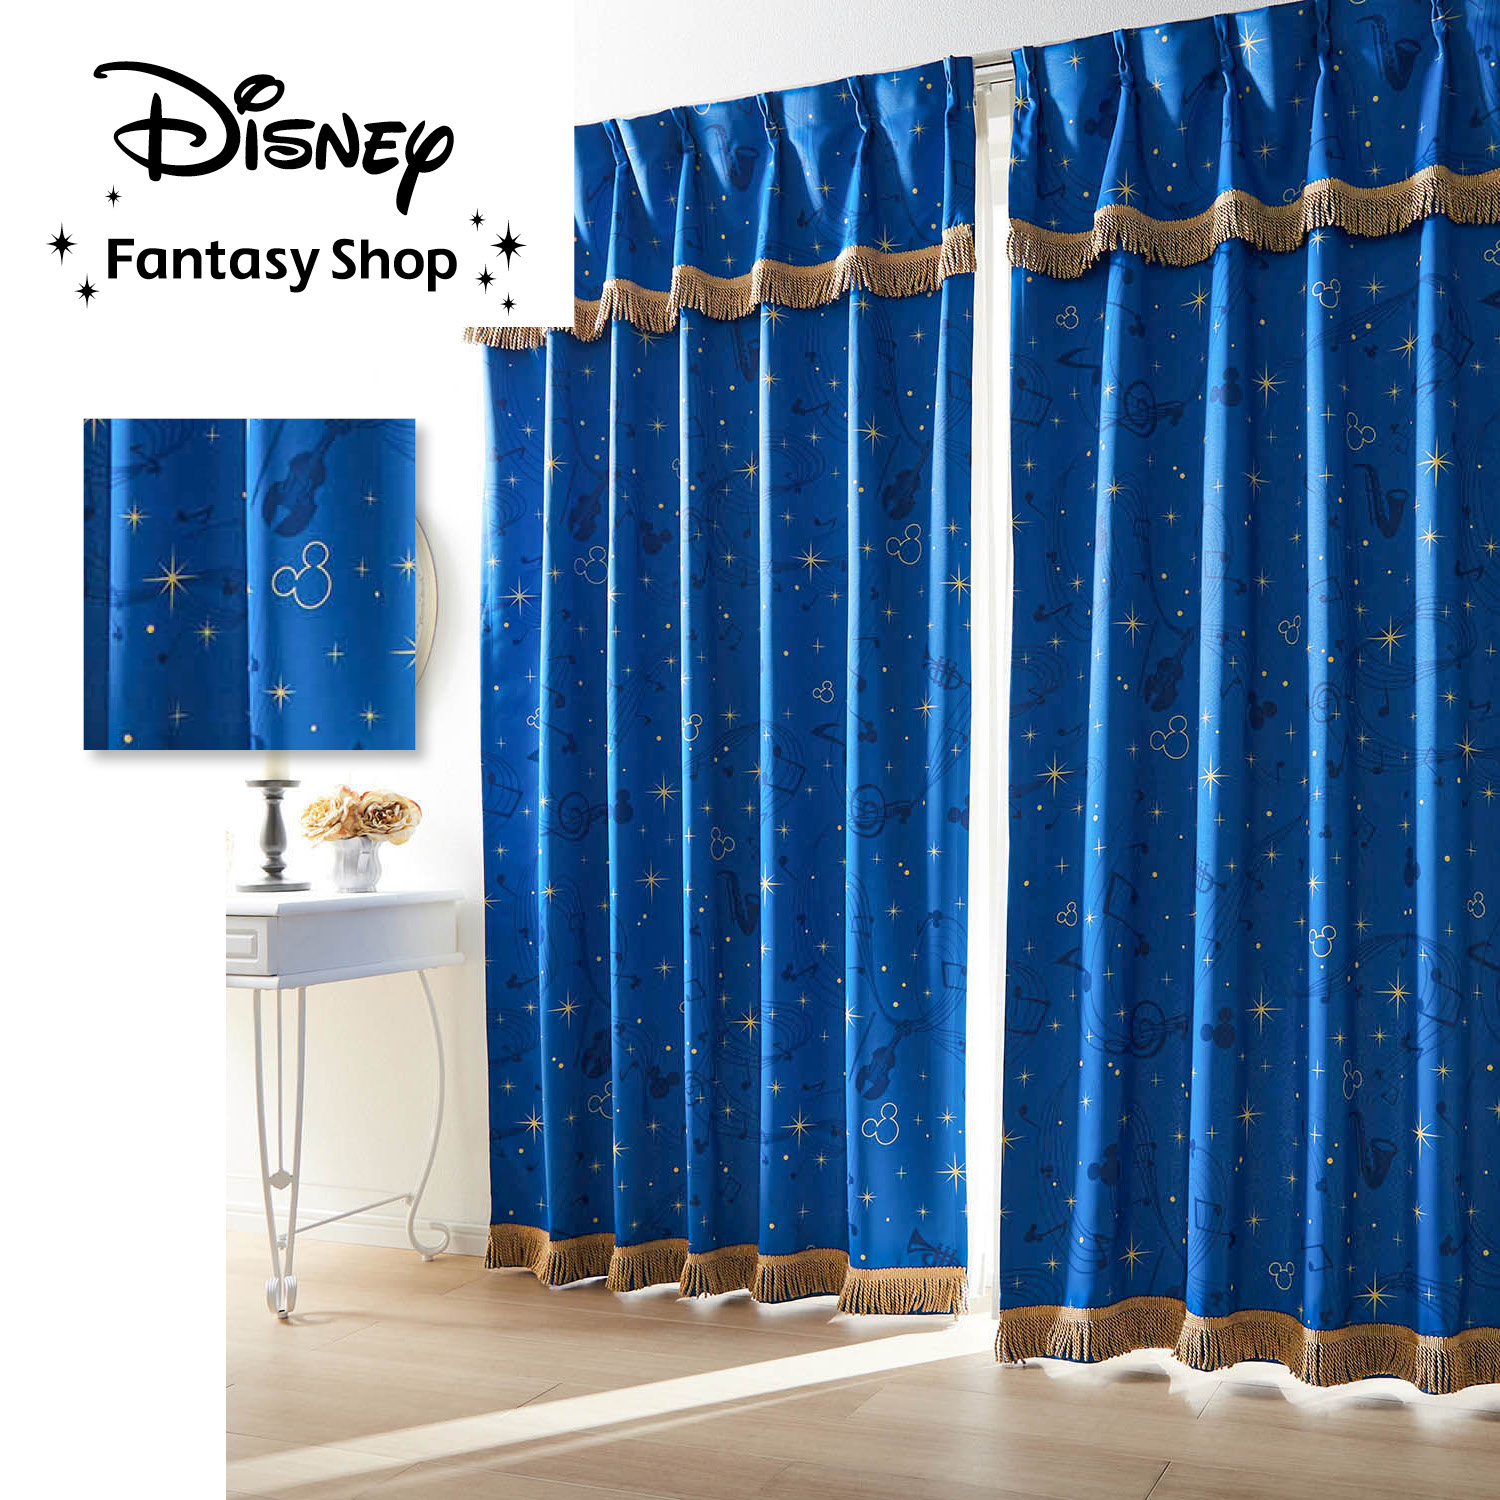 【ディズニー/Disney】【新柄登場】 緞帳のような遮光・遮熱カーテン「ミッキーモチーフ」